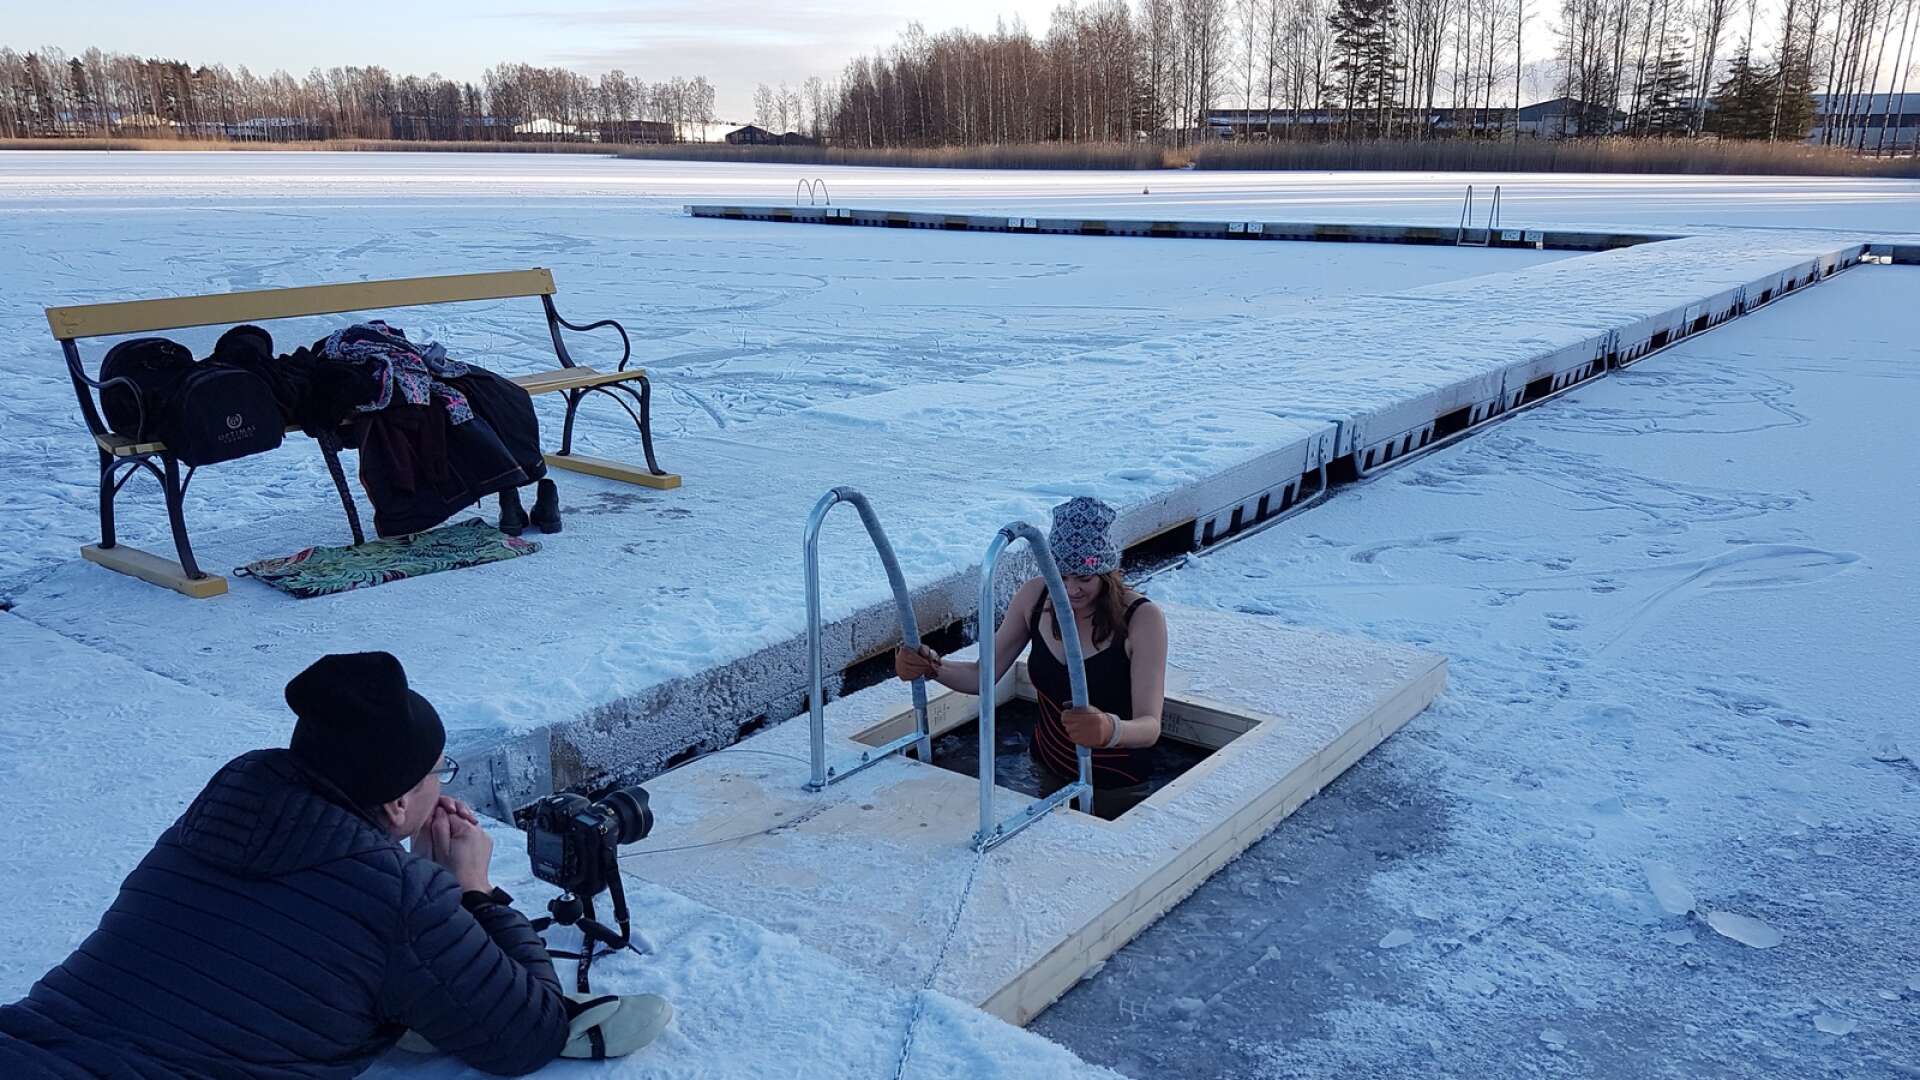 På måndagen invigde Karlstads kommun sin nya vinterbadarvak på Örsholmen. Det var inte så många badsugna på plats. Men Anna Sims, nyhetschef på NWT, passade på att ta ett dopp.